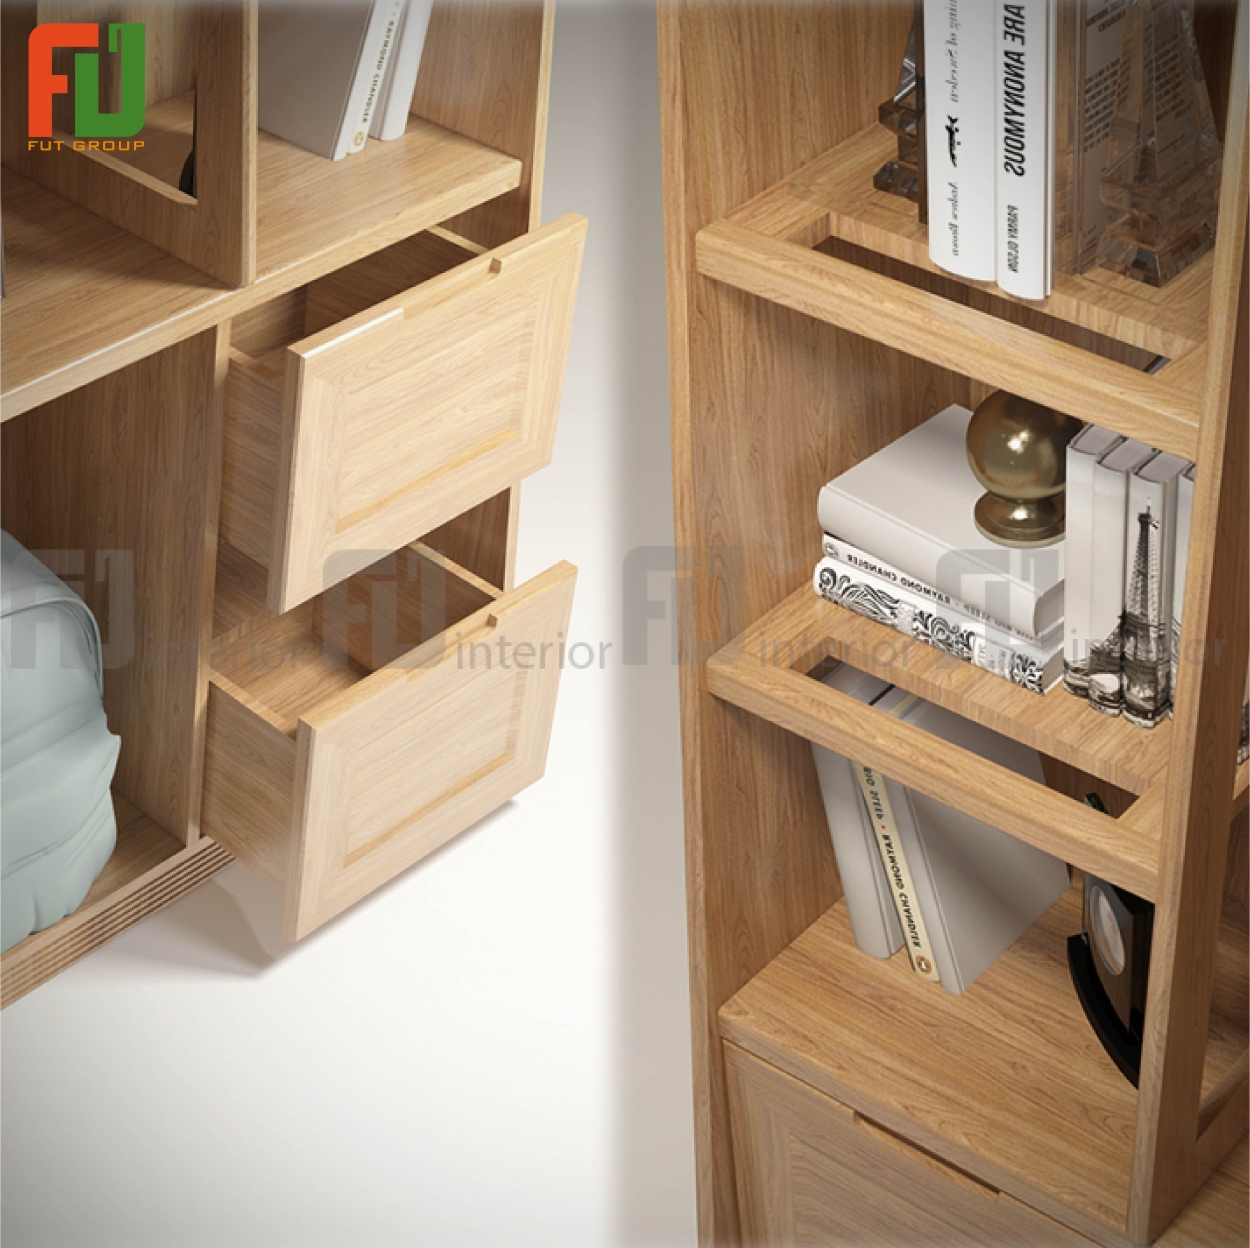 Tủ sách gỗ tần bì Deluxe có nhiều ngăn chứa lớn, rất tiết kiệm không gian.